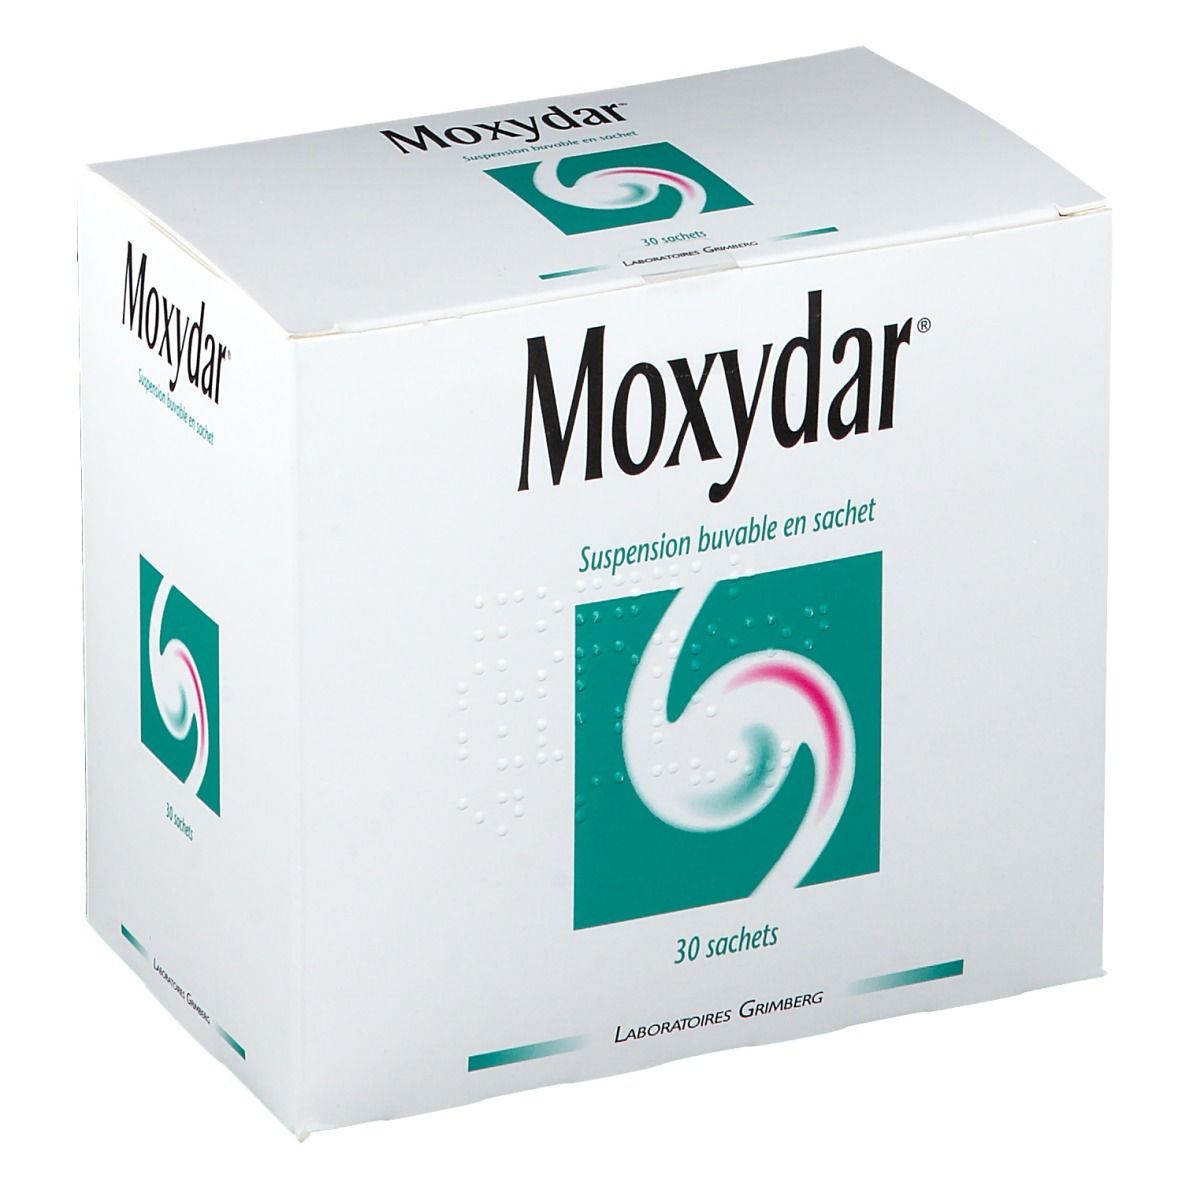 Moxydar®